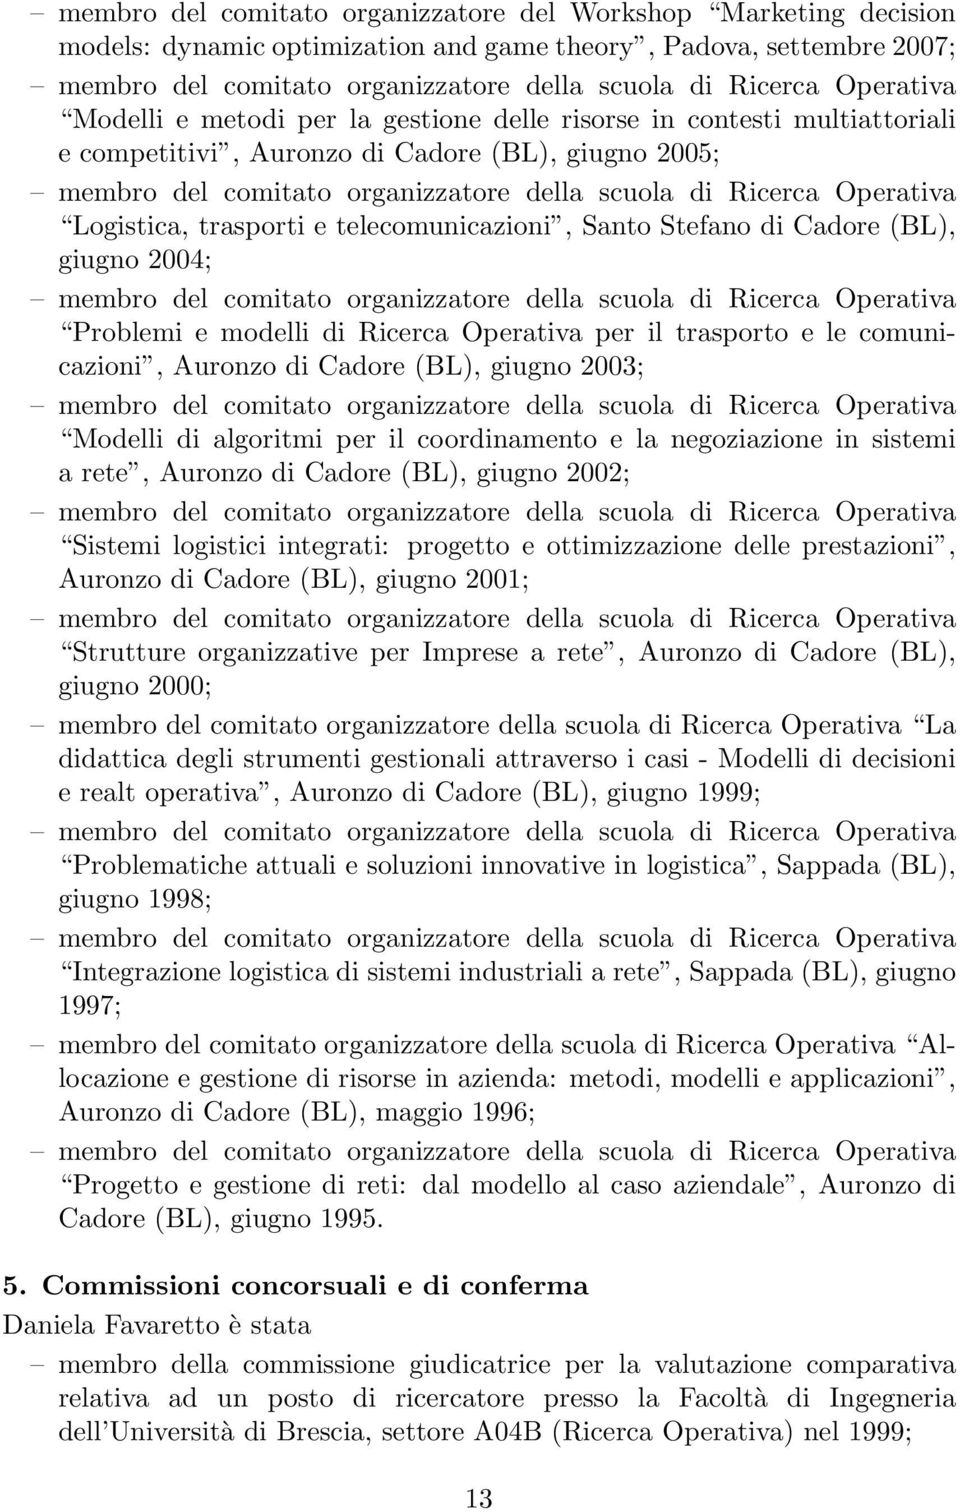 trasporto e le comunicazioni, Auronzo di Cadore (BL), giugno 2003; Modelli di algoritmi per il coordinamento e la negoziazione in sistemi a rete, Auronzo di Cadore (BL), giugno 2002; Sistemi